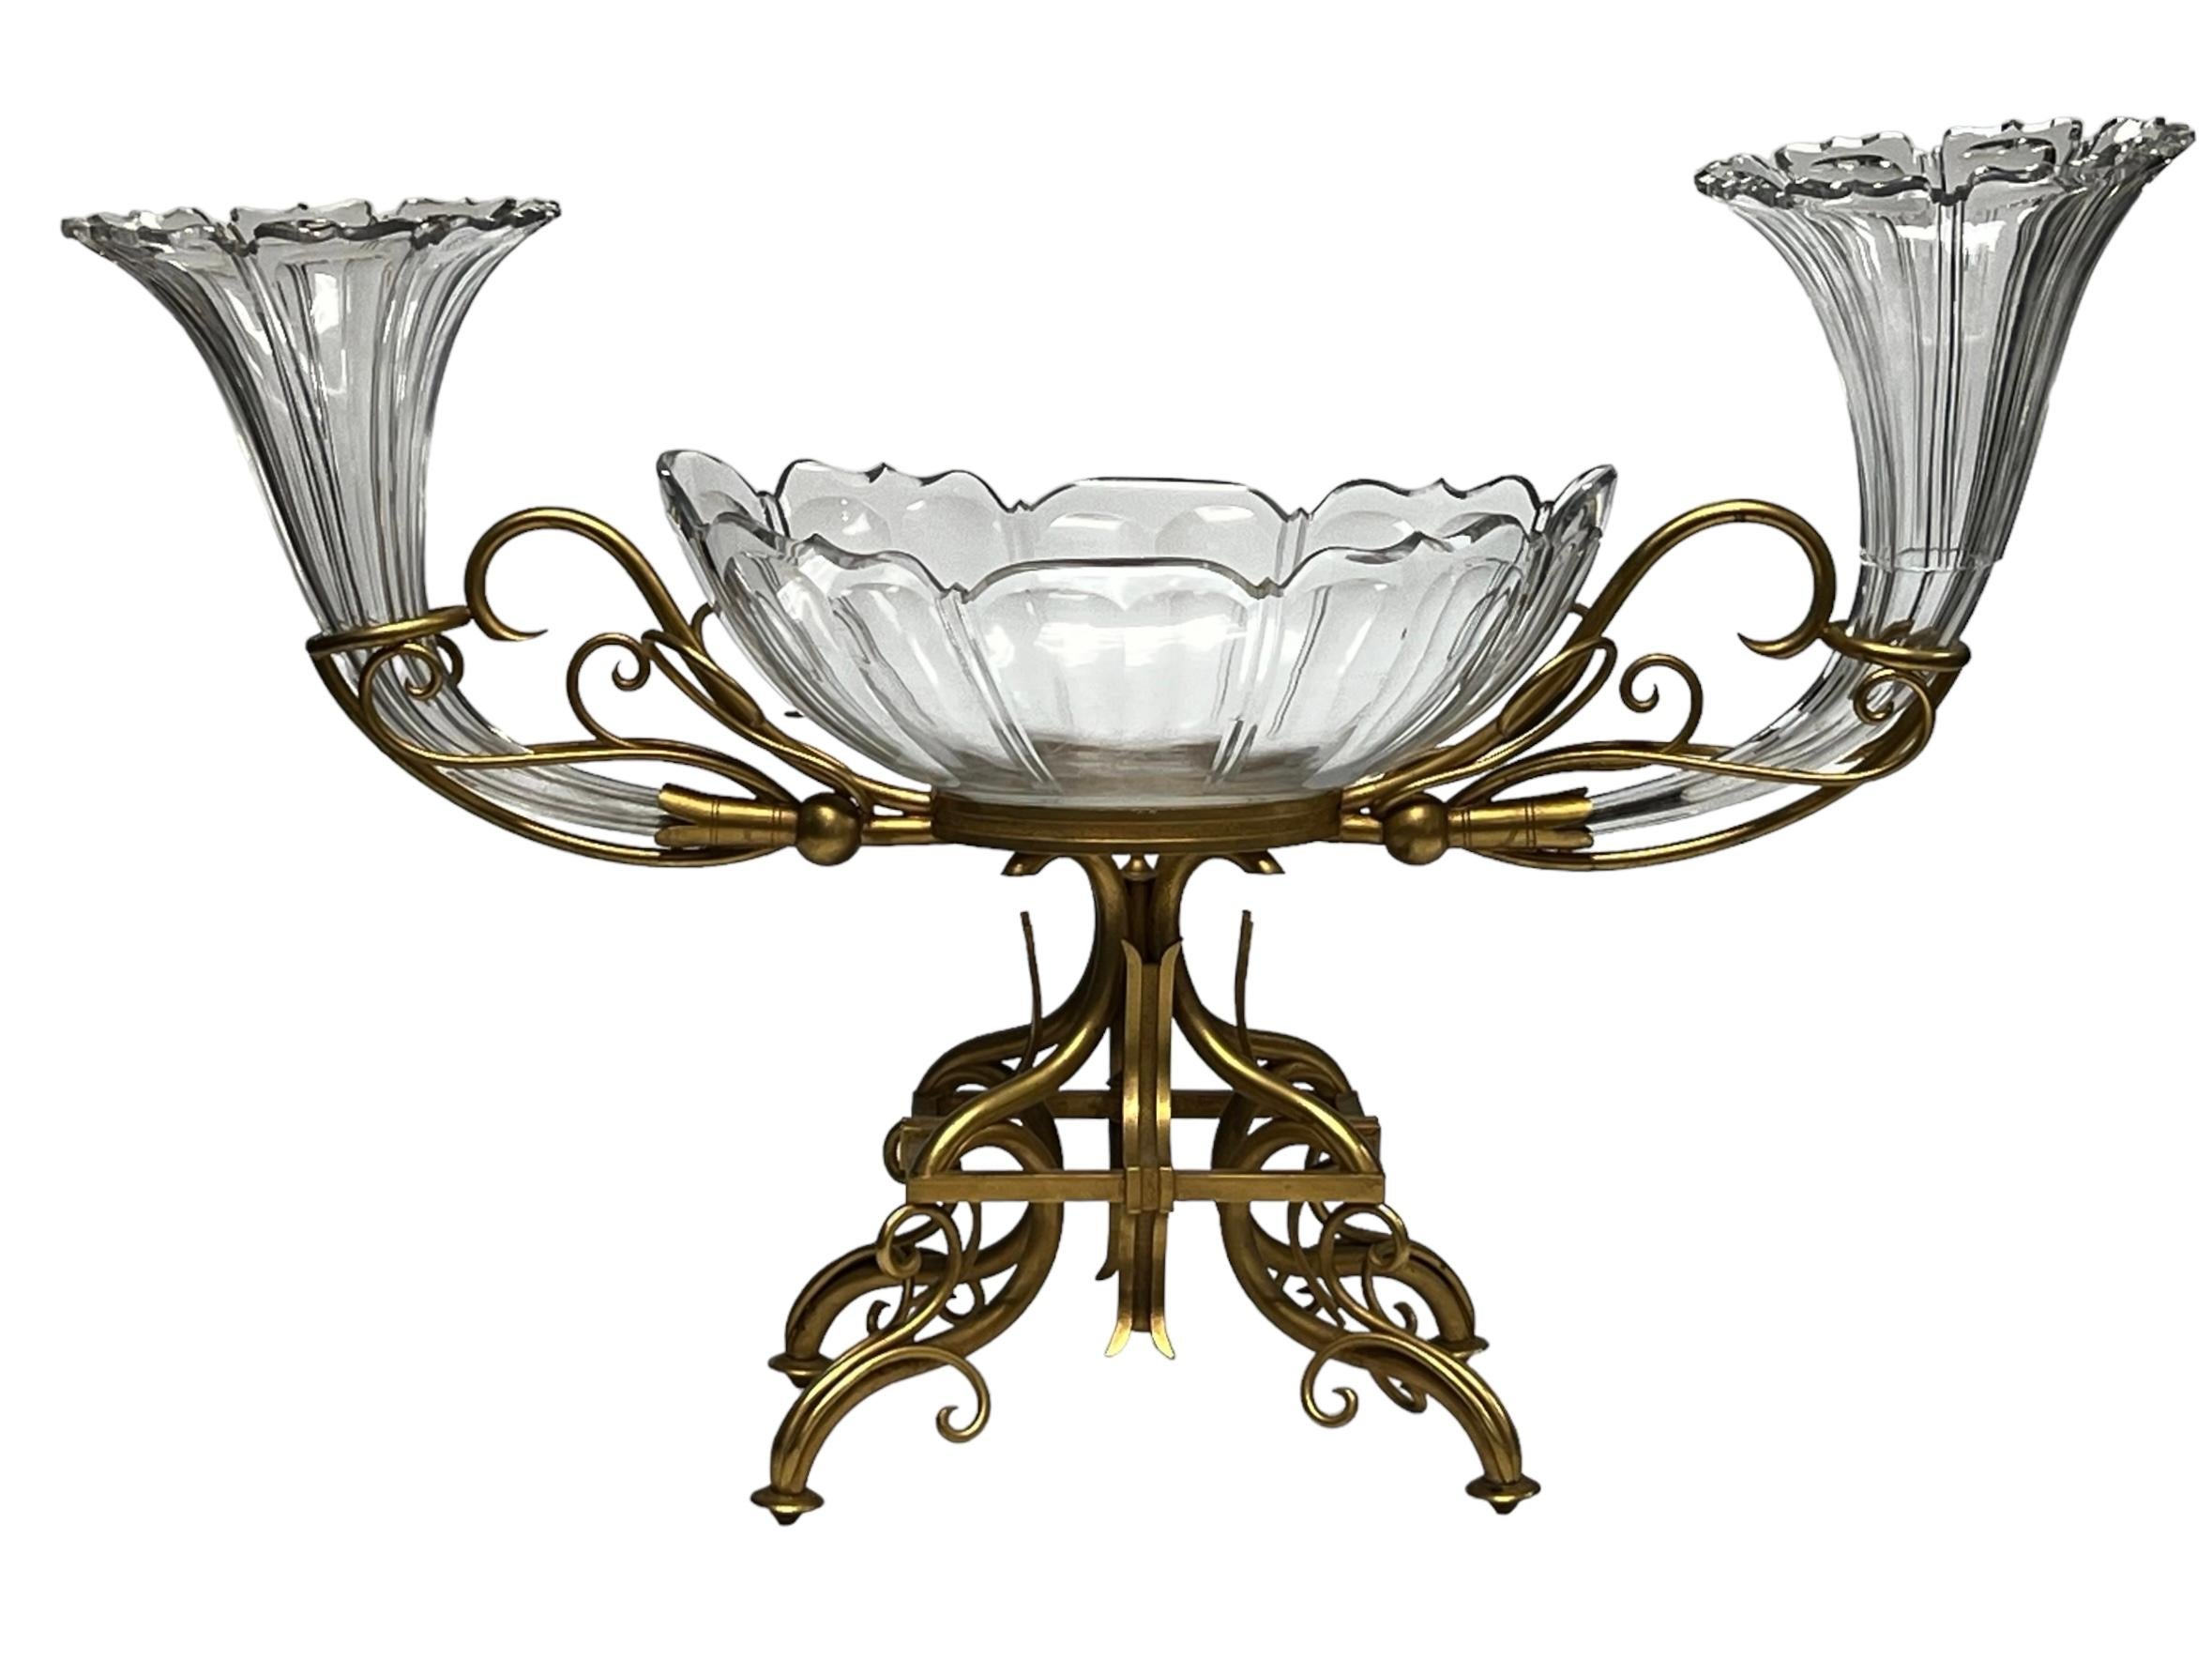 Très grand centre de table en bronze et cristal de très belle qualité, composé d'une coupe centrale et d'une paire de vases de part et d'autre.
Attribué à 